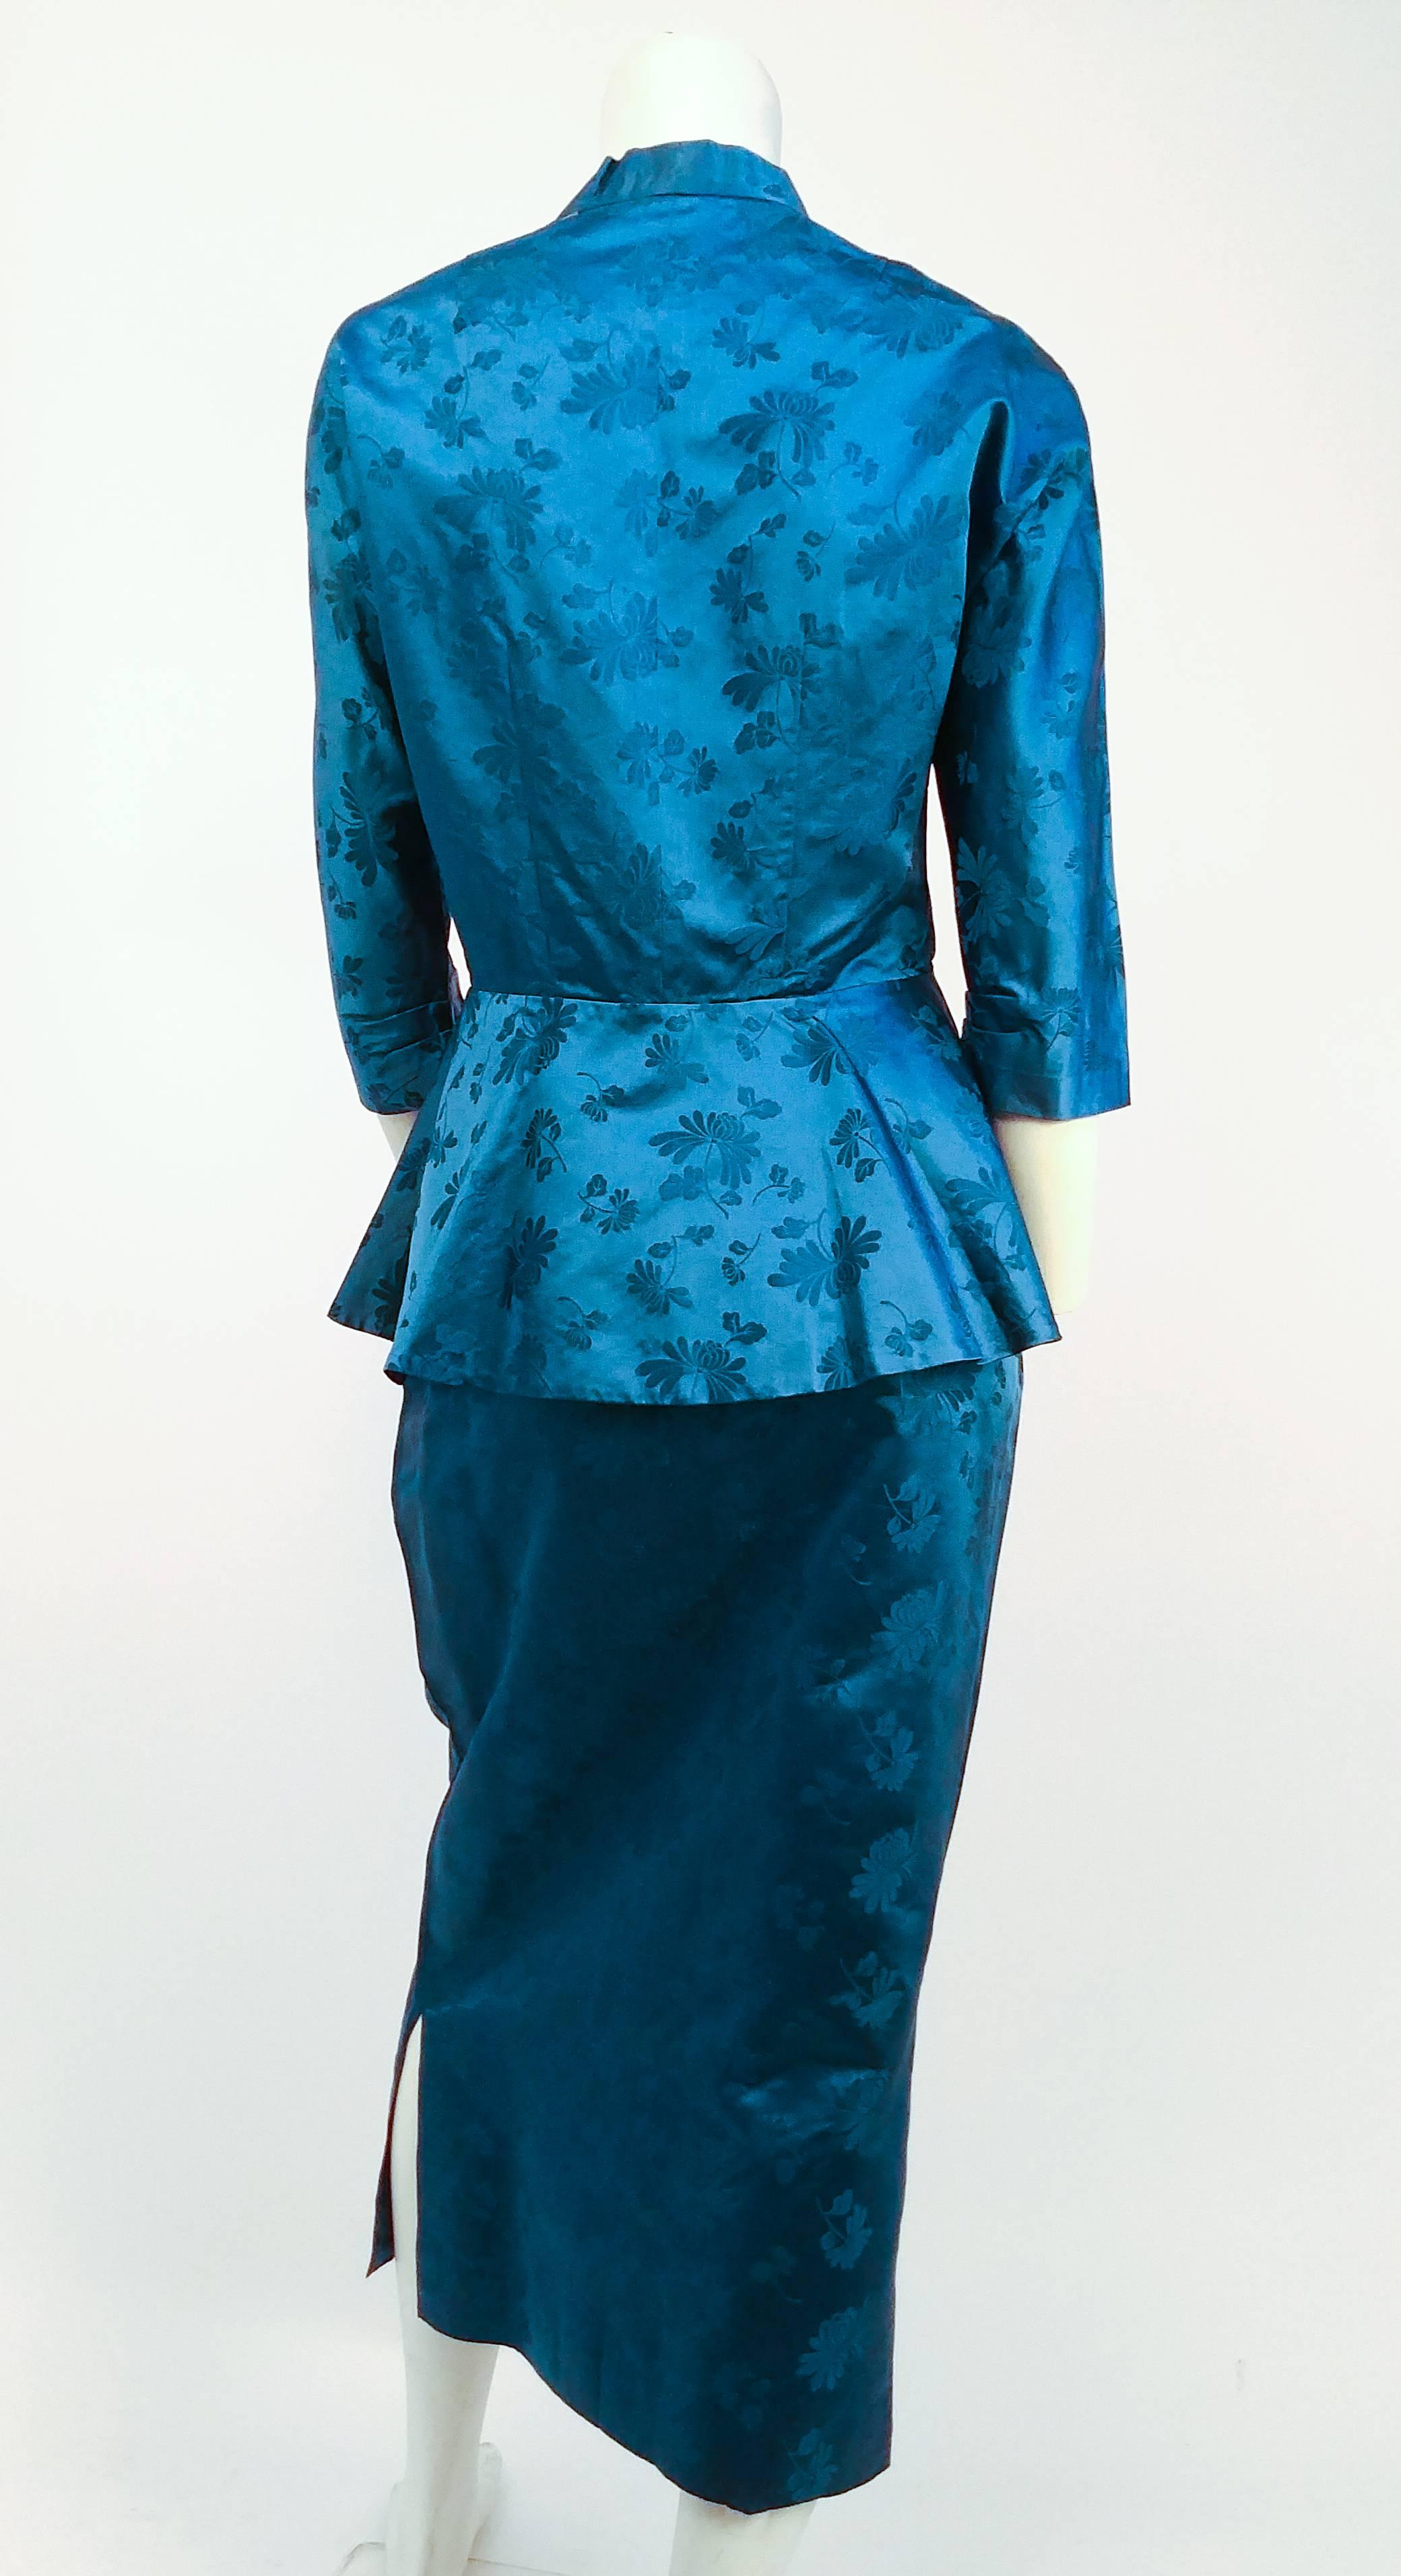 ensemble jupe et veste en jacquard de soie asiatique des années 1950. Le haut se ferme avec des boutons-pression à l'encolure et une grenouille à la taille. S'évase à la taille pour une silhouette péplum classique. La jupe a été modifiée pour être